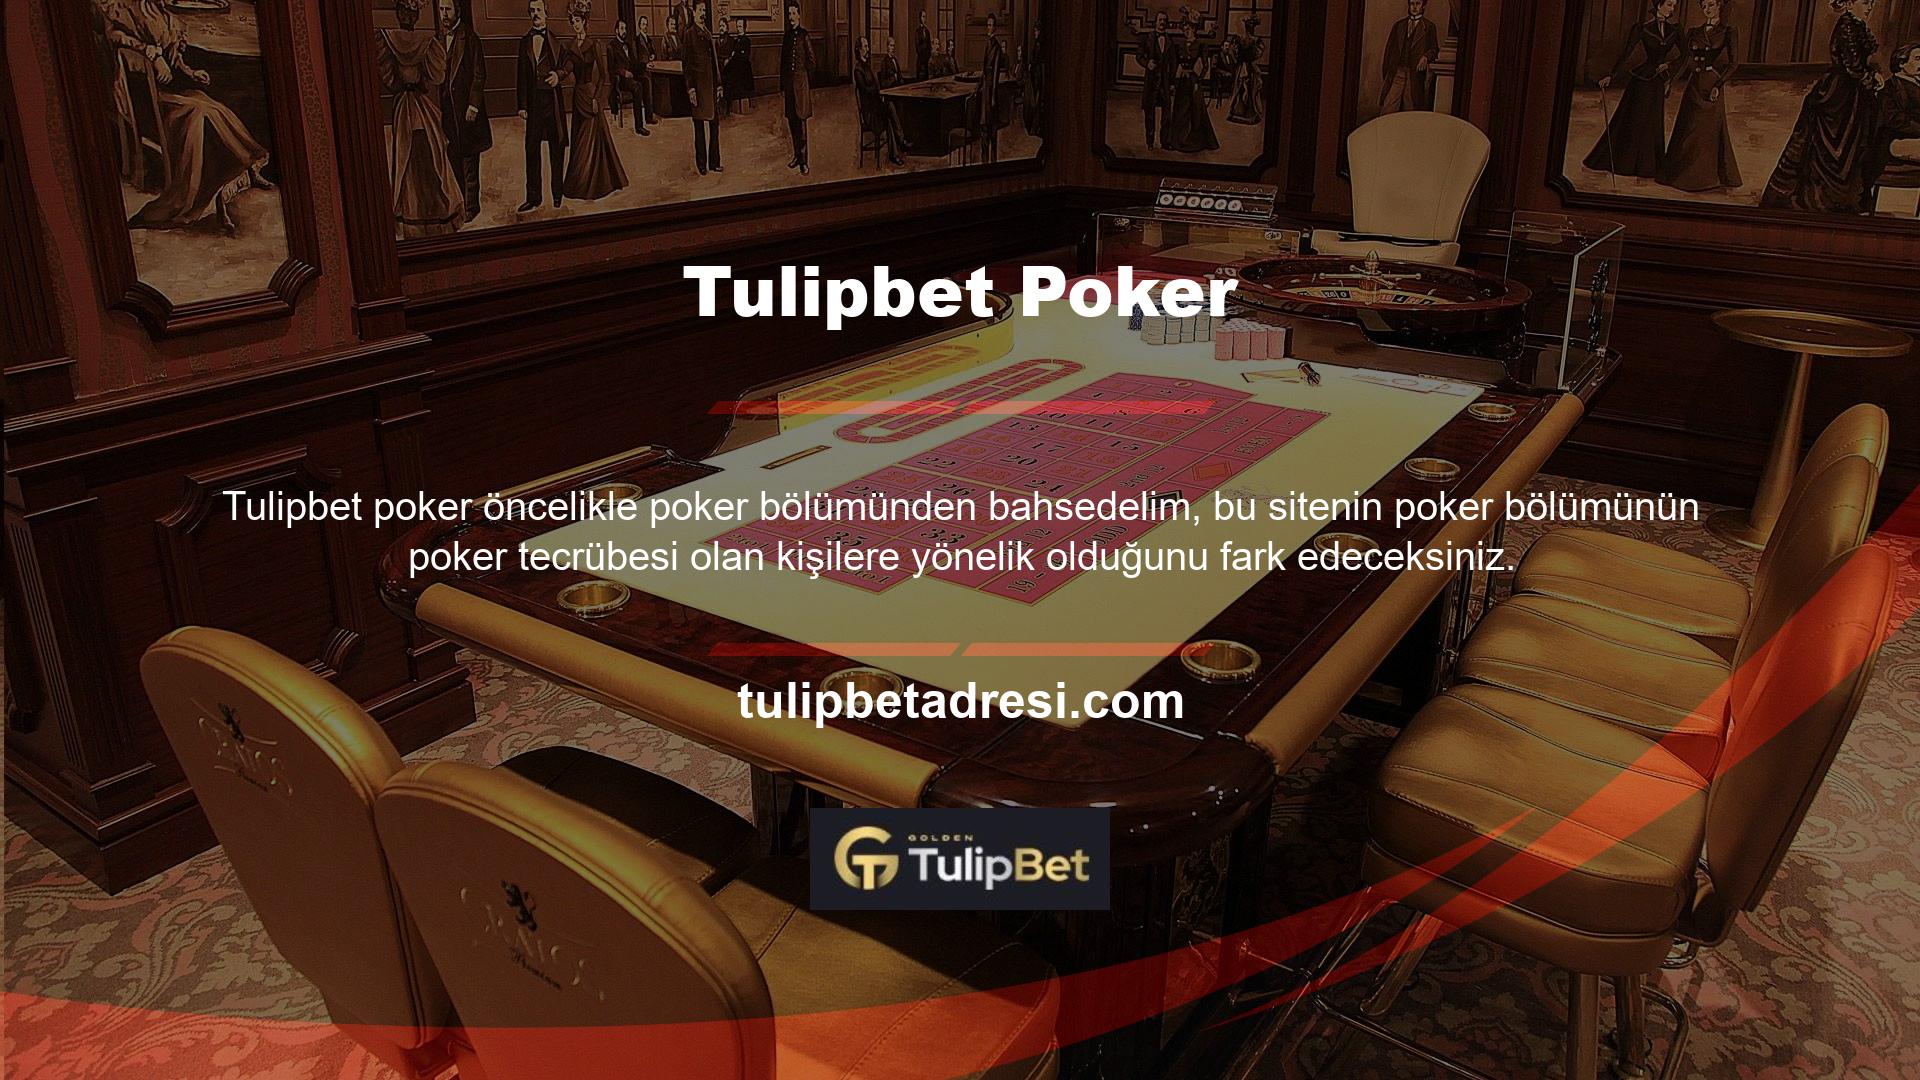 Tulipbet Poker'in bu altyapısına ek olarak Turkish Poker, Open Poker, Room Poker ve en önemlisi Texas Hold'em ve Omaha Poker gibi Tulipbet Poker de bulunmaktadır